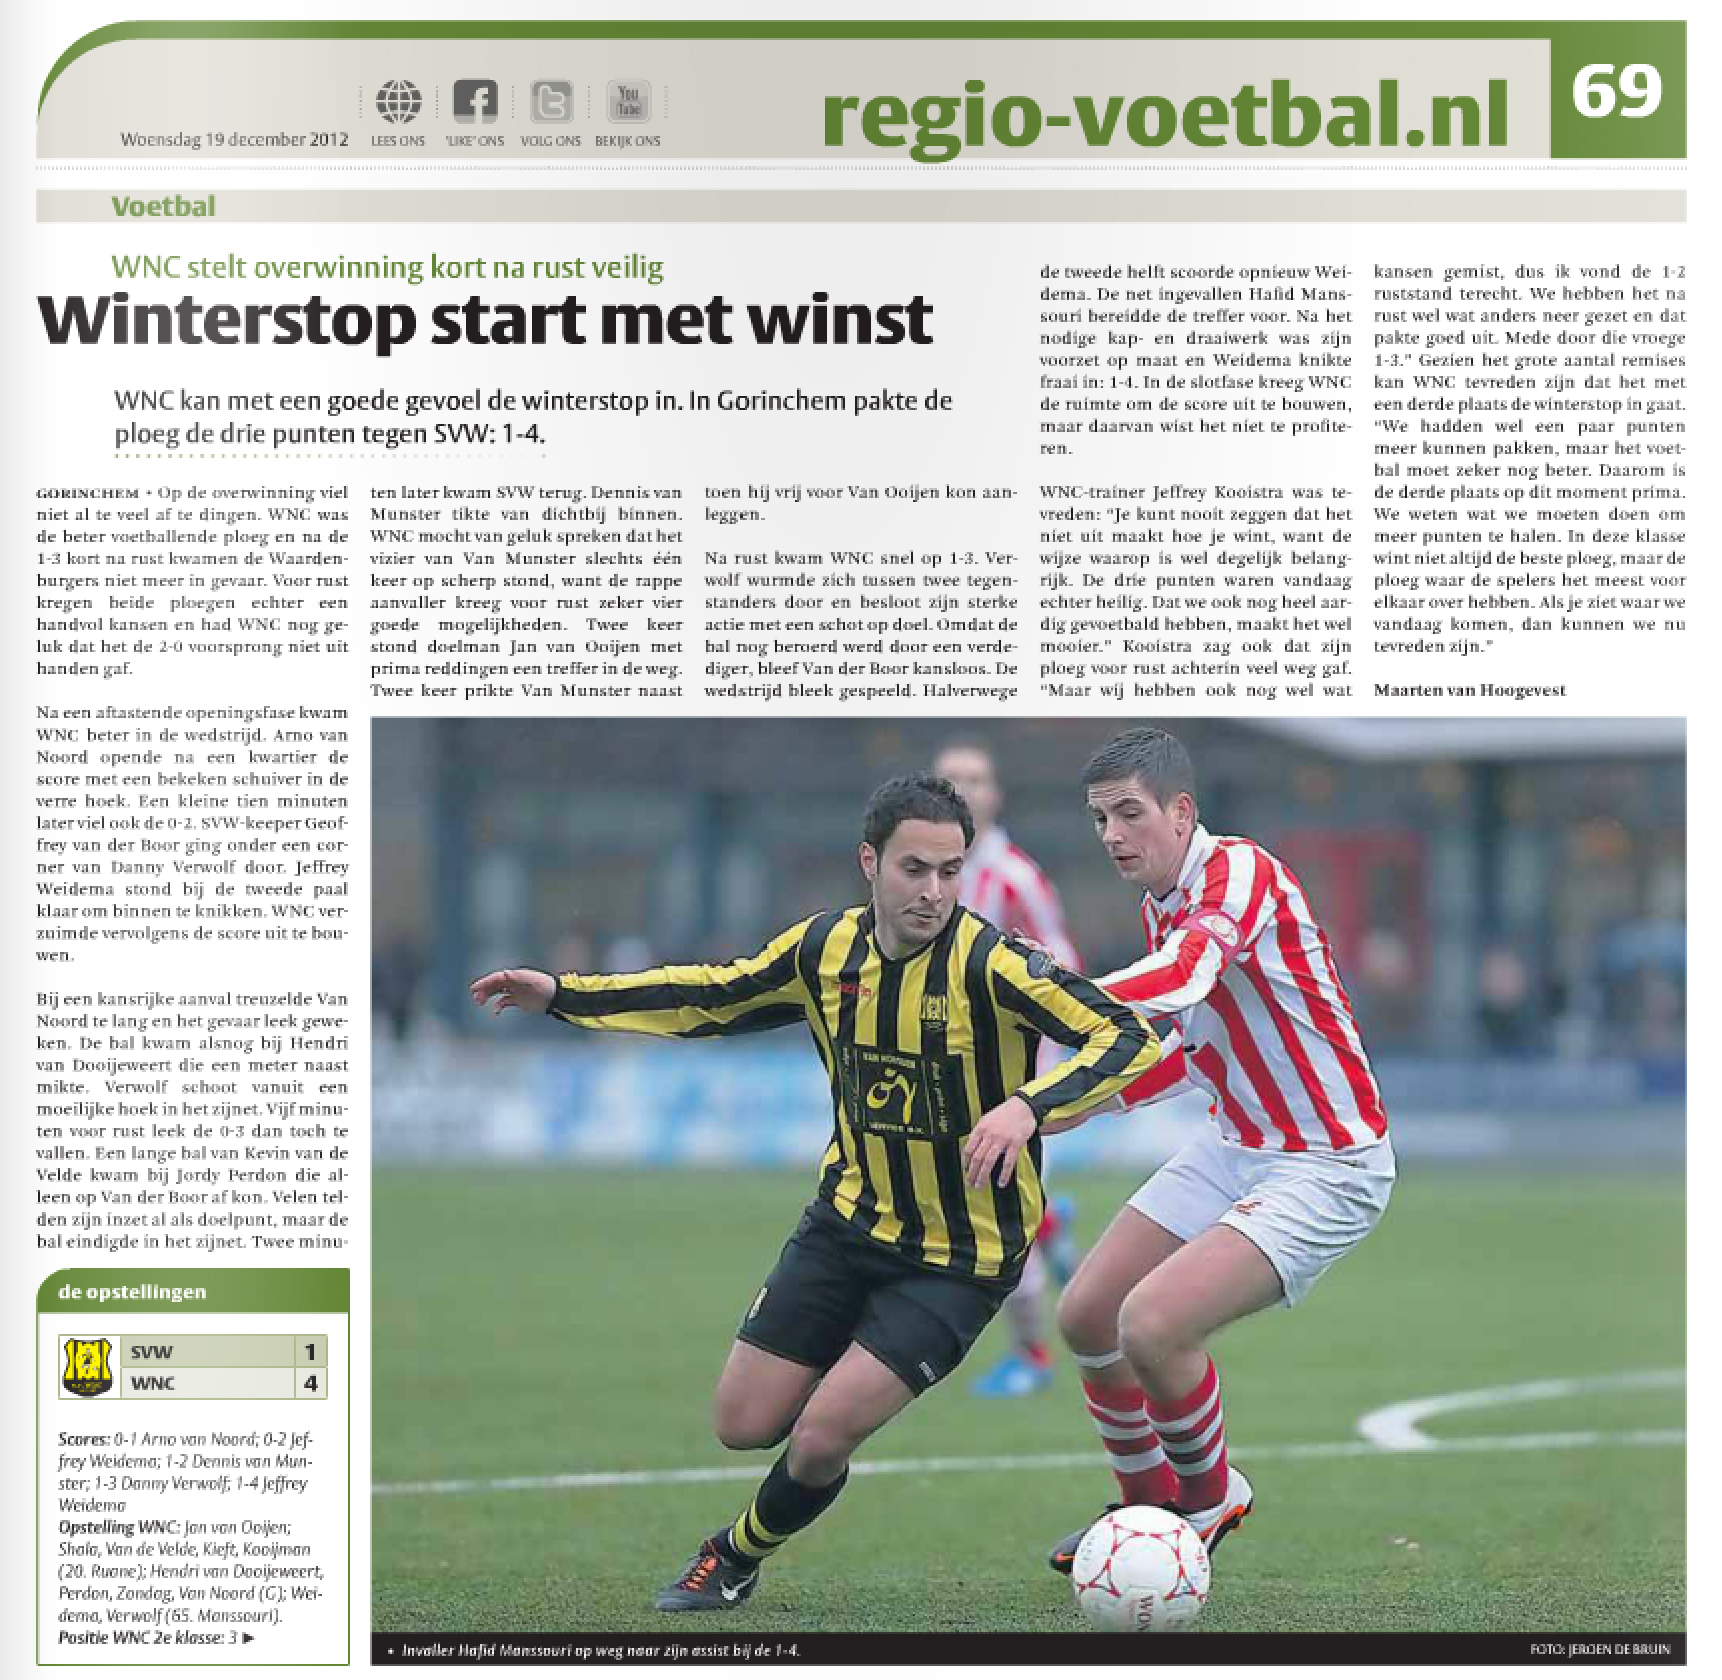 Foto van DBRN Fotografie in Het Kontakt, editie Leerdam, week 51-2012. "Sportpagina" 